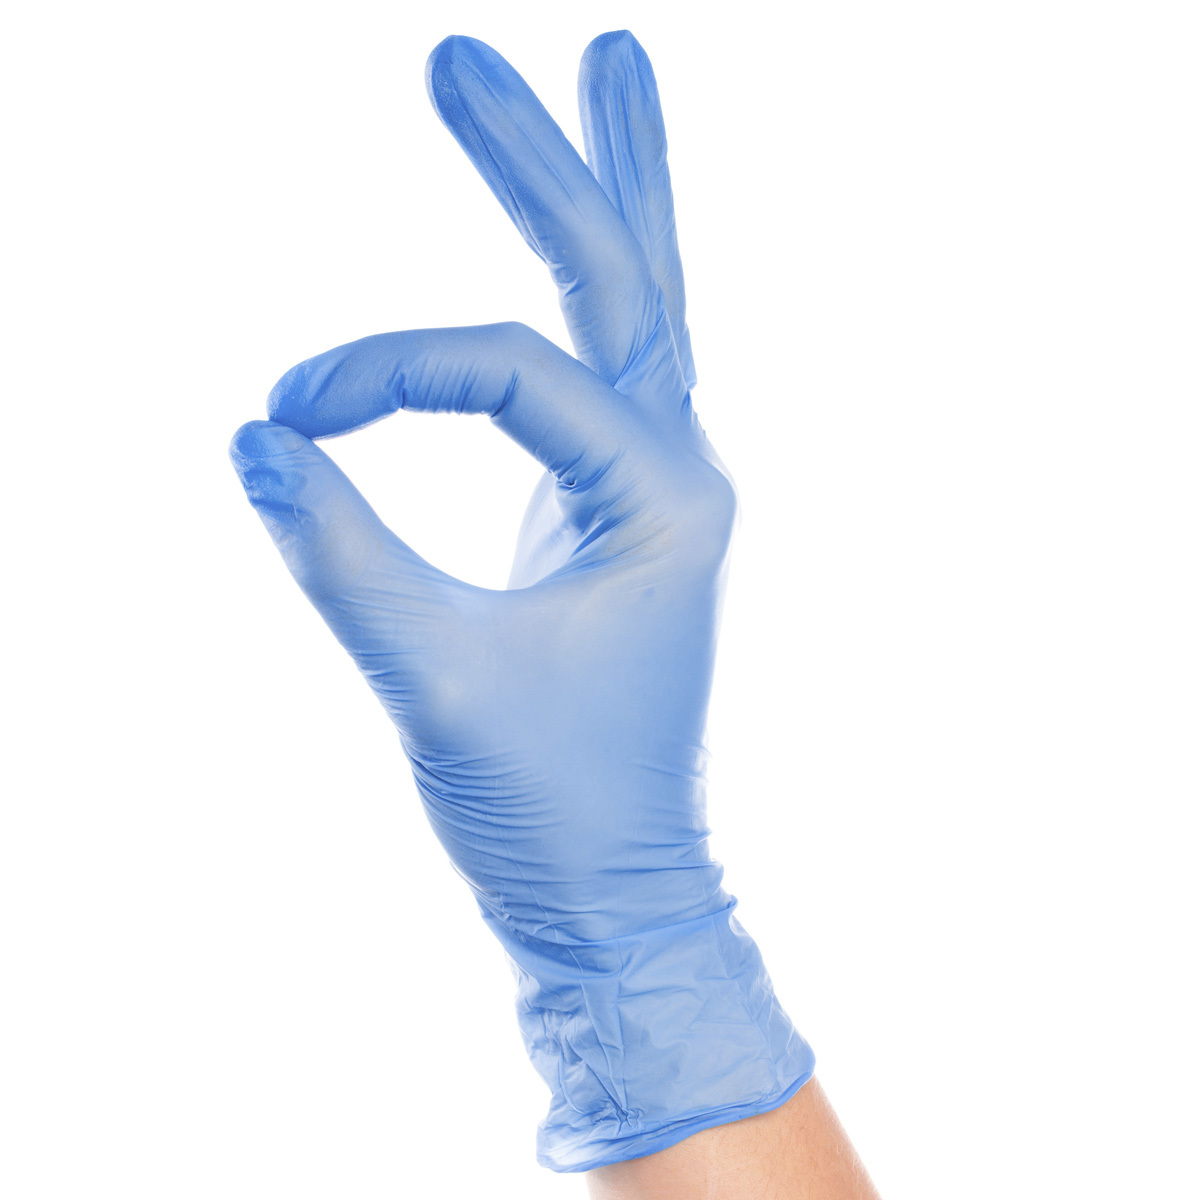 По каким критериям выбирать рабочие перчатки?